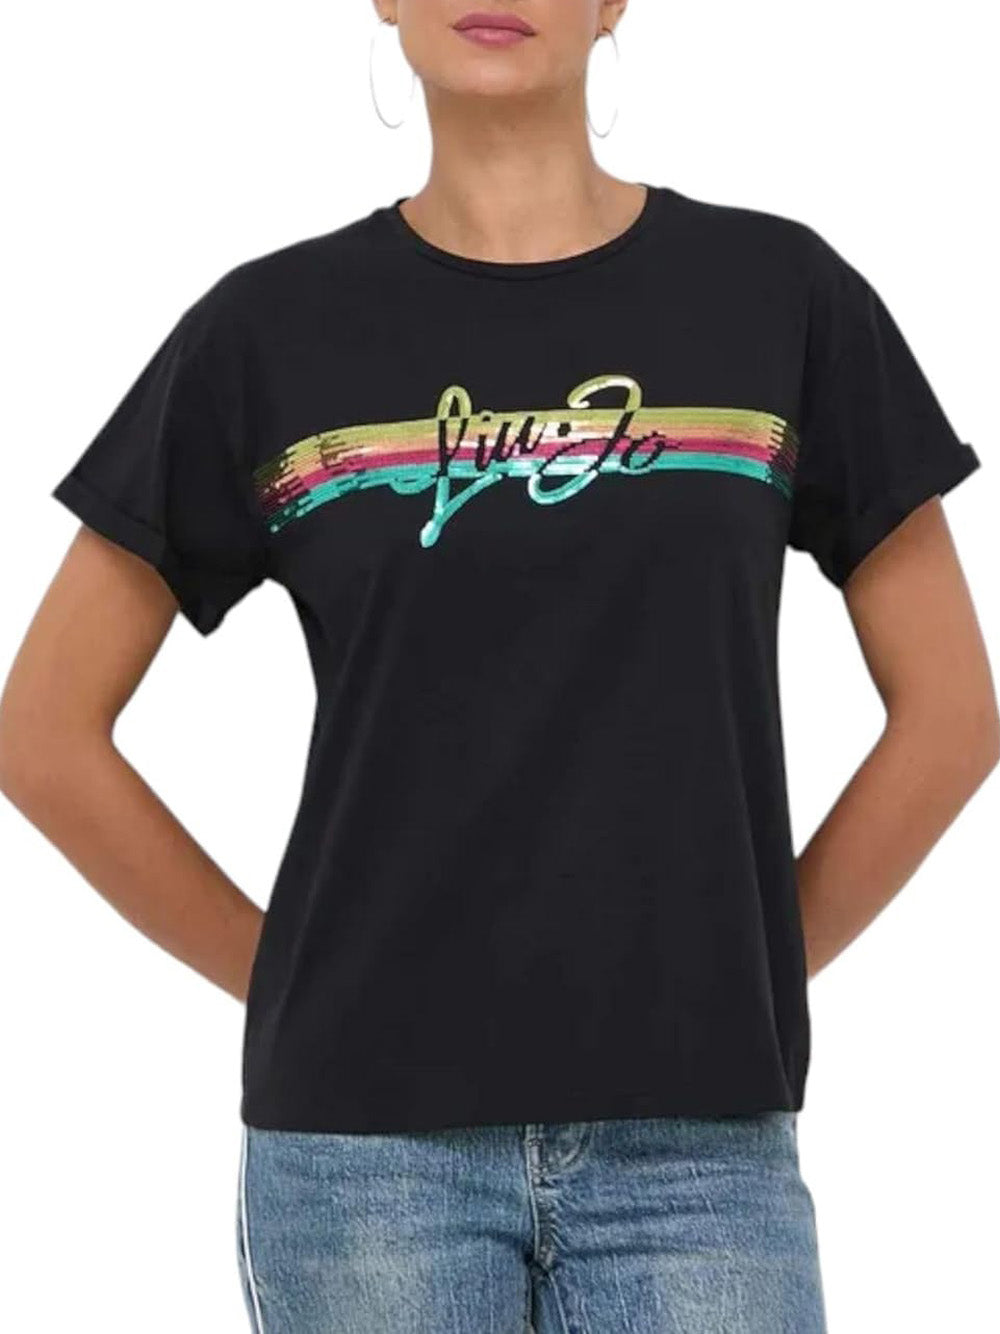 LIU.JO T-shirt Donna - Nero modello VA4153JS003